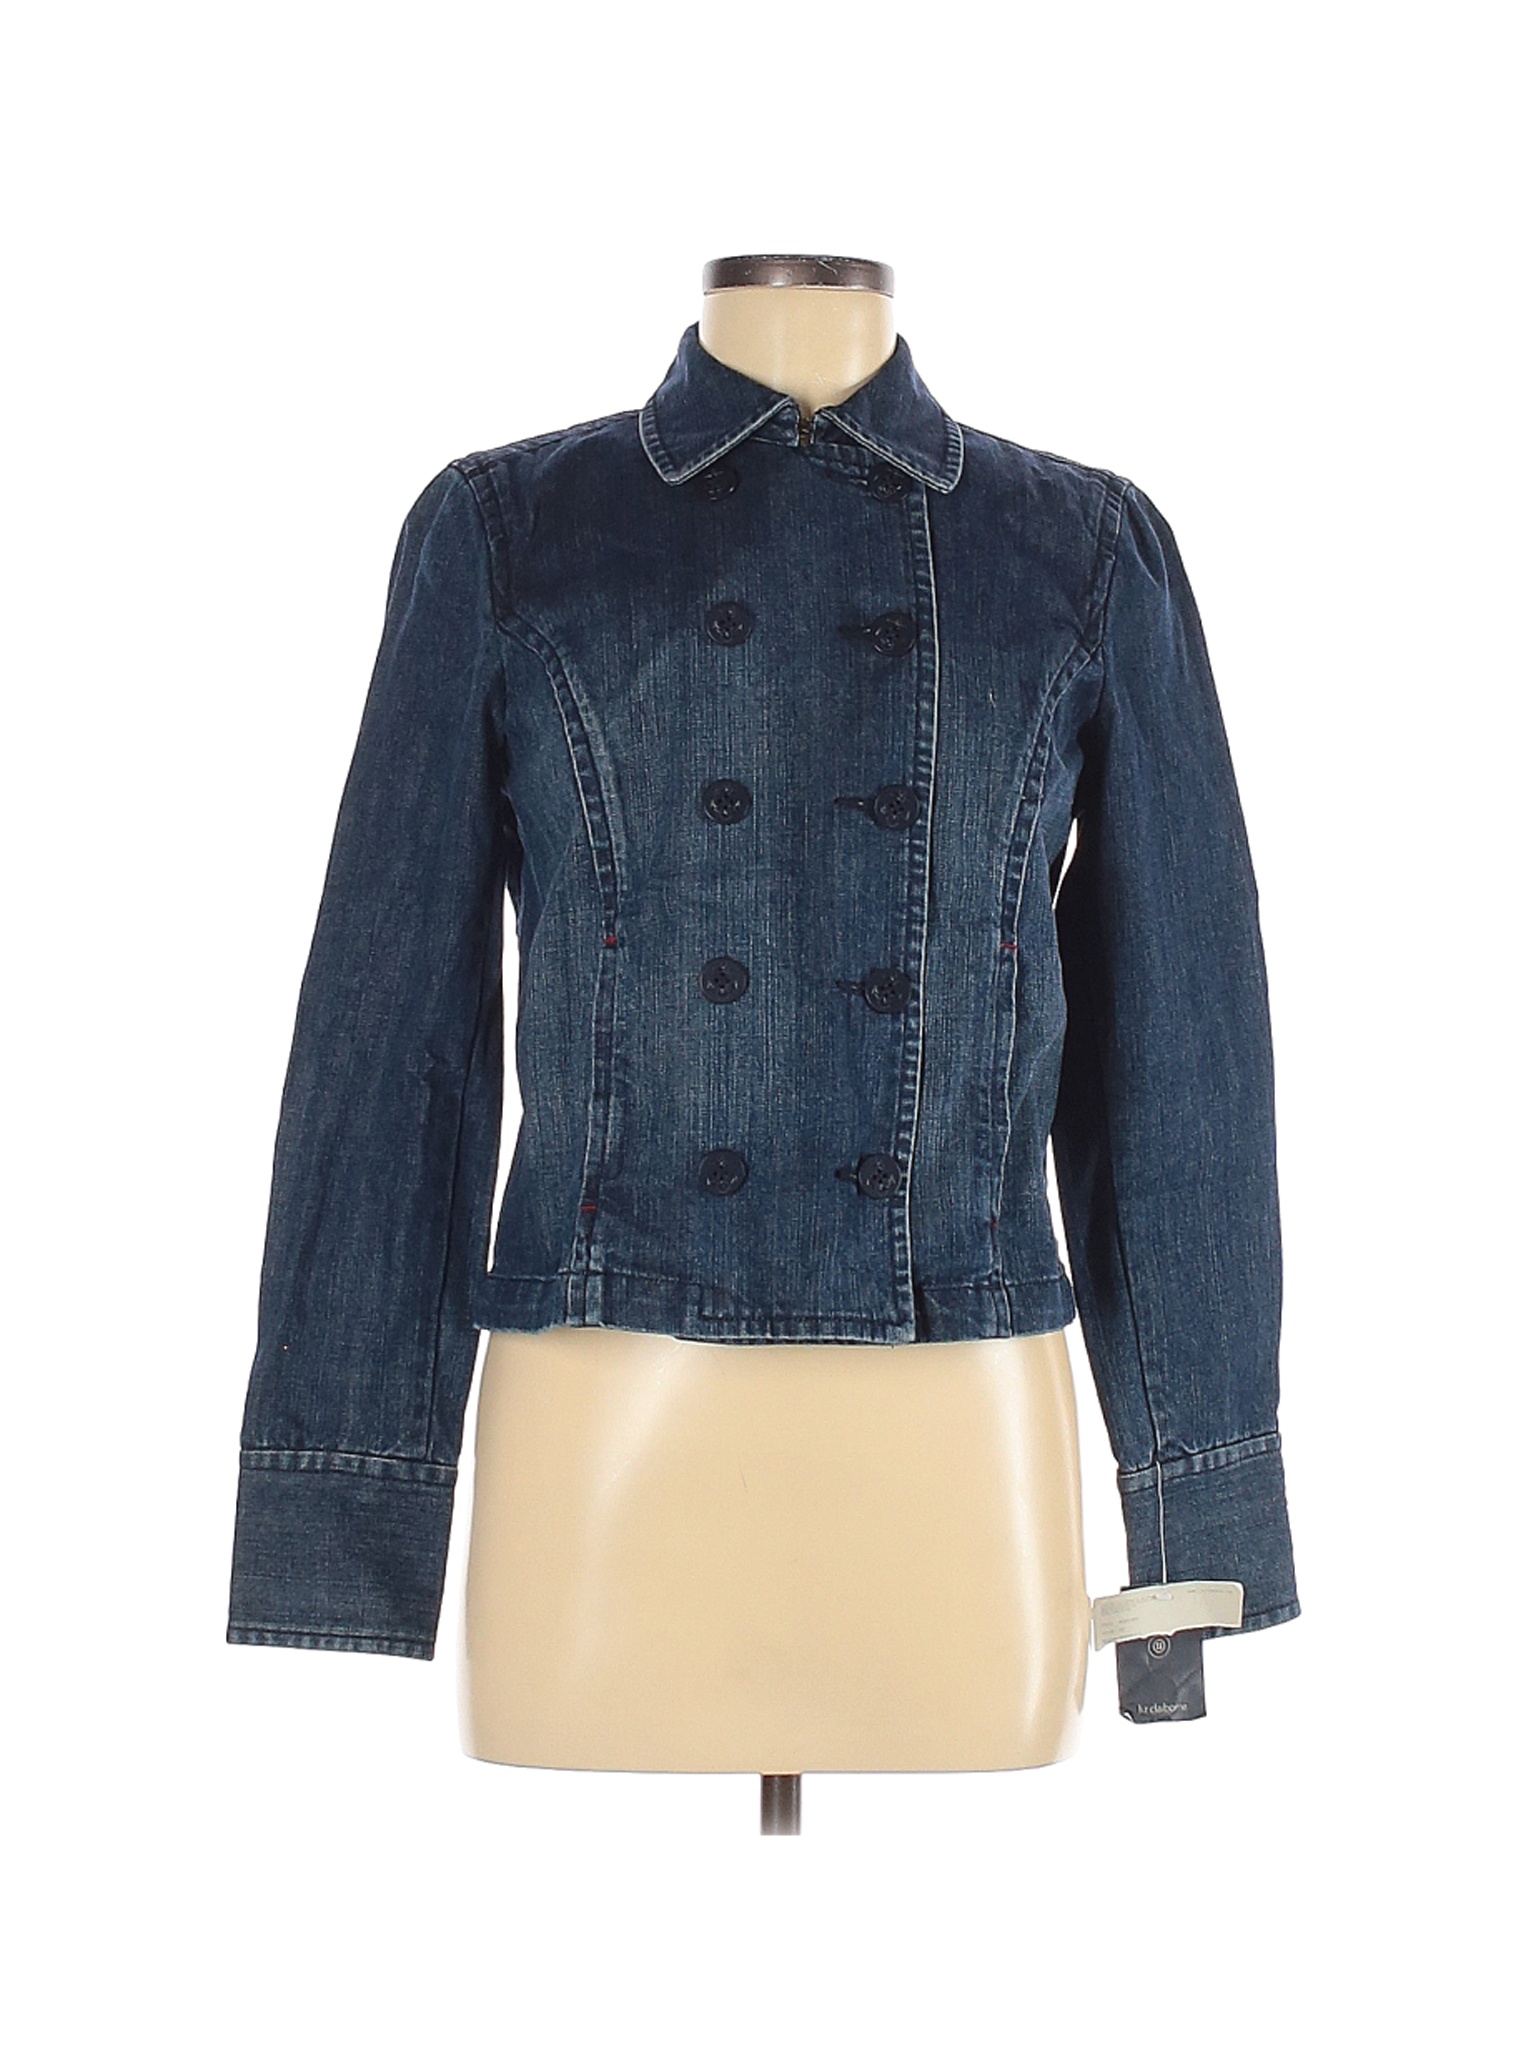 NWT Liz Claiborne Women Blue Denim Jacket 6 | eBay